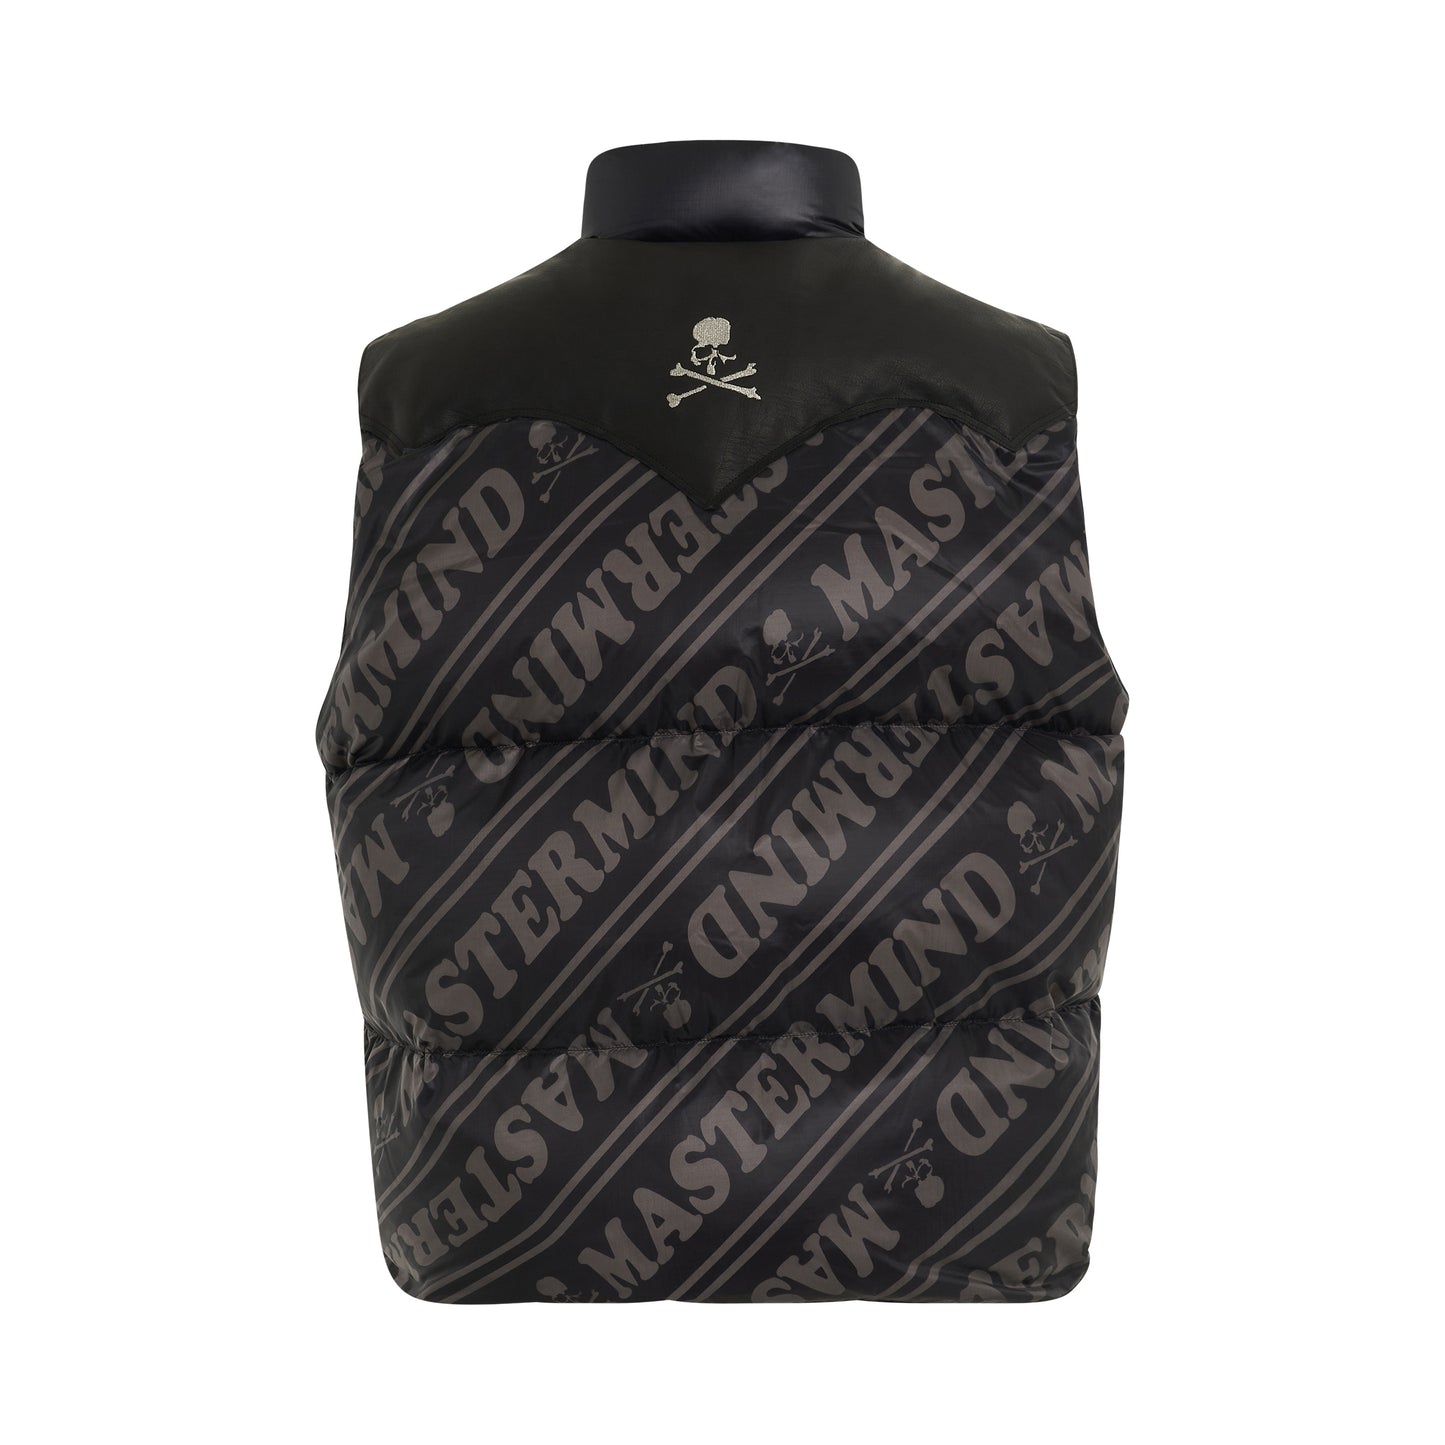 Mastermind World x Roarguns Vest in Black